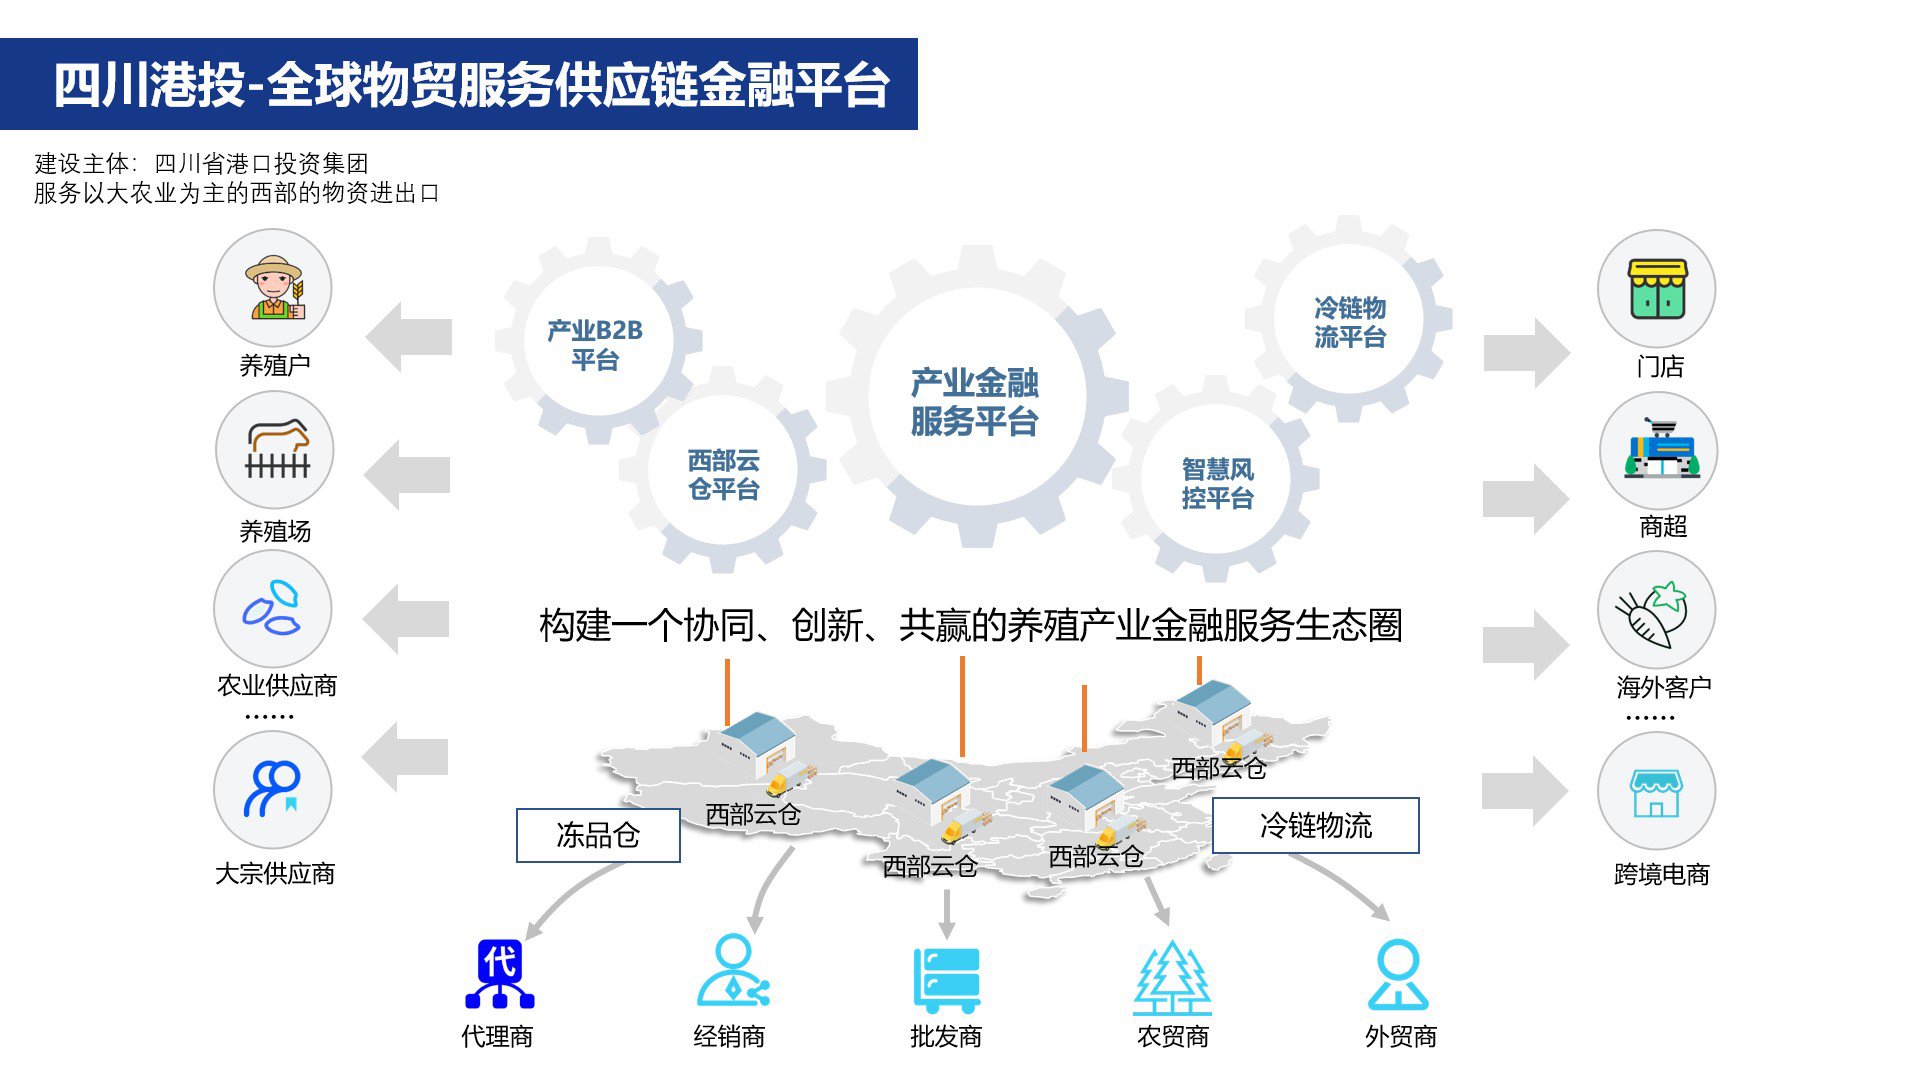 四川港投-全球物贸服务供应链金融平台